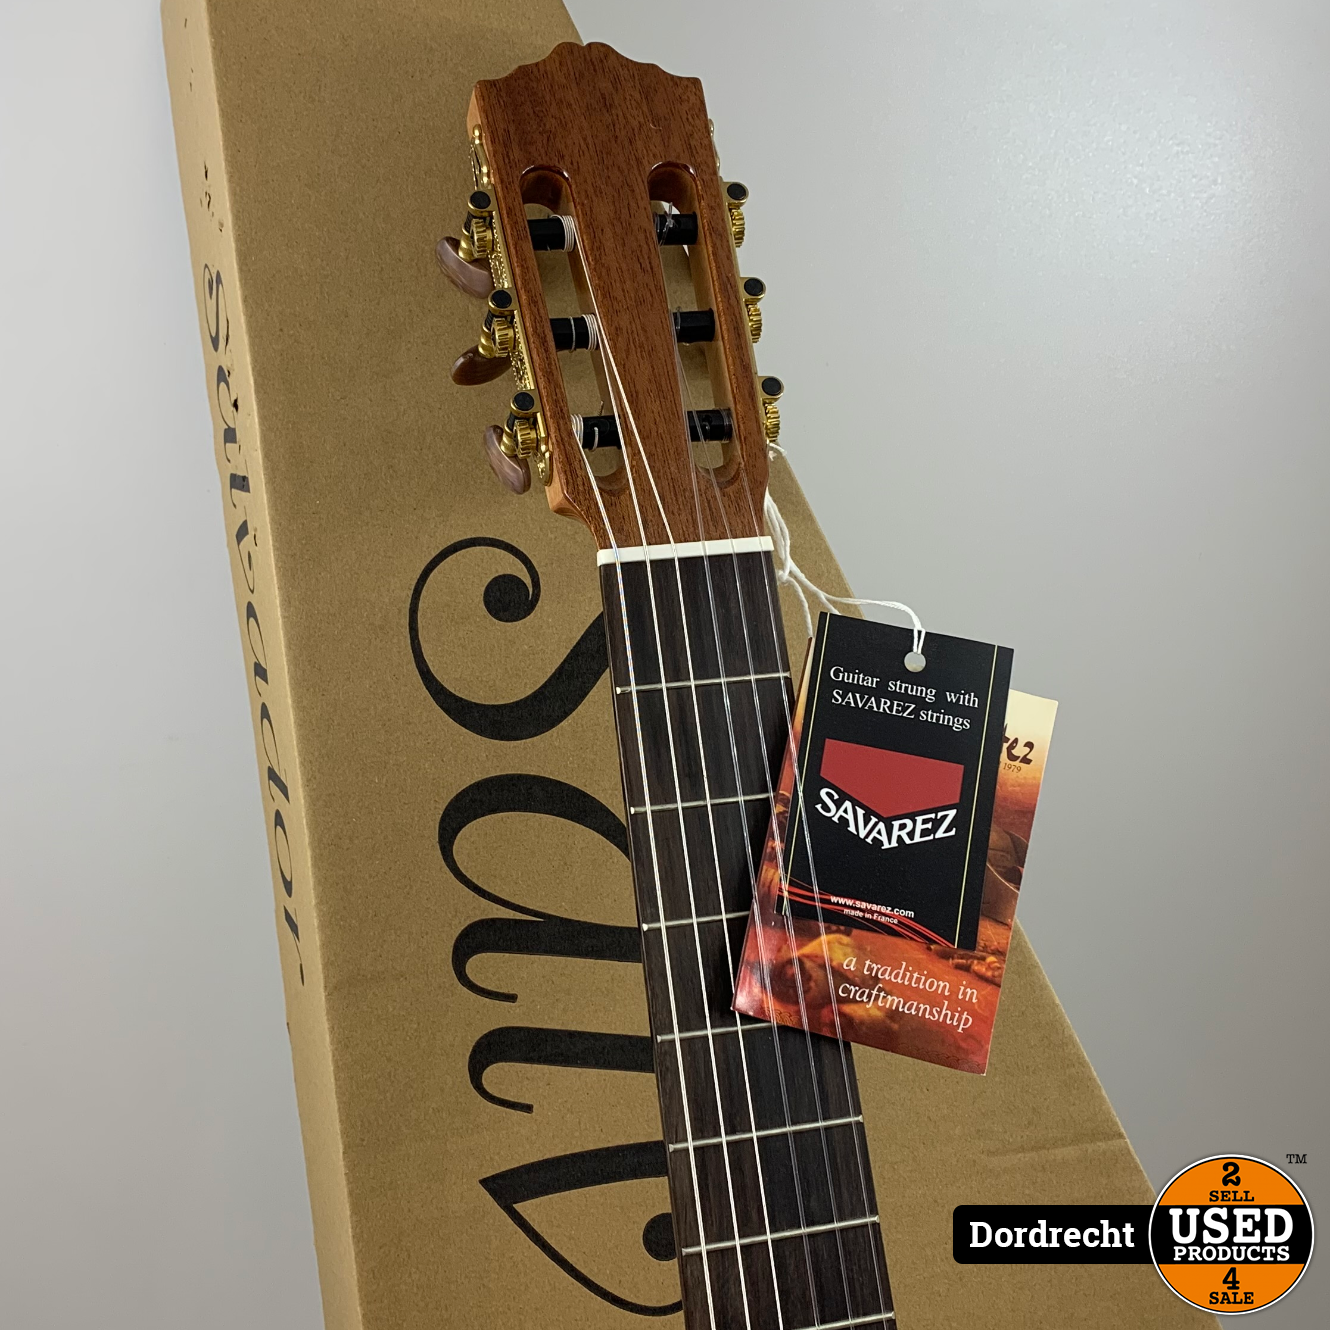 Geleidbaarheid dividend Locomotief Salvador Cortez CC21 klassieke gitaar | Nieuw in doos | Met garantie - Used  Products Dordrecht